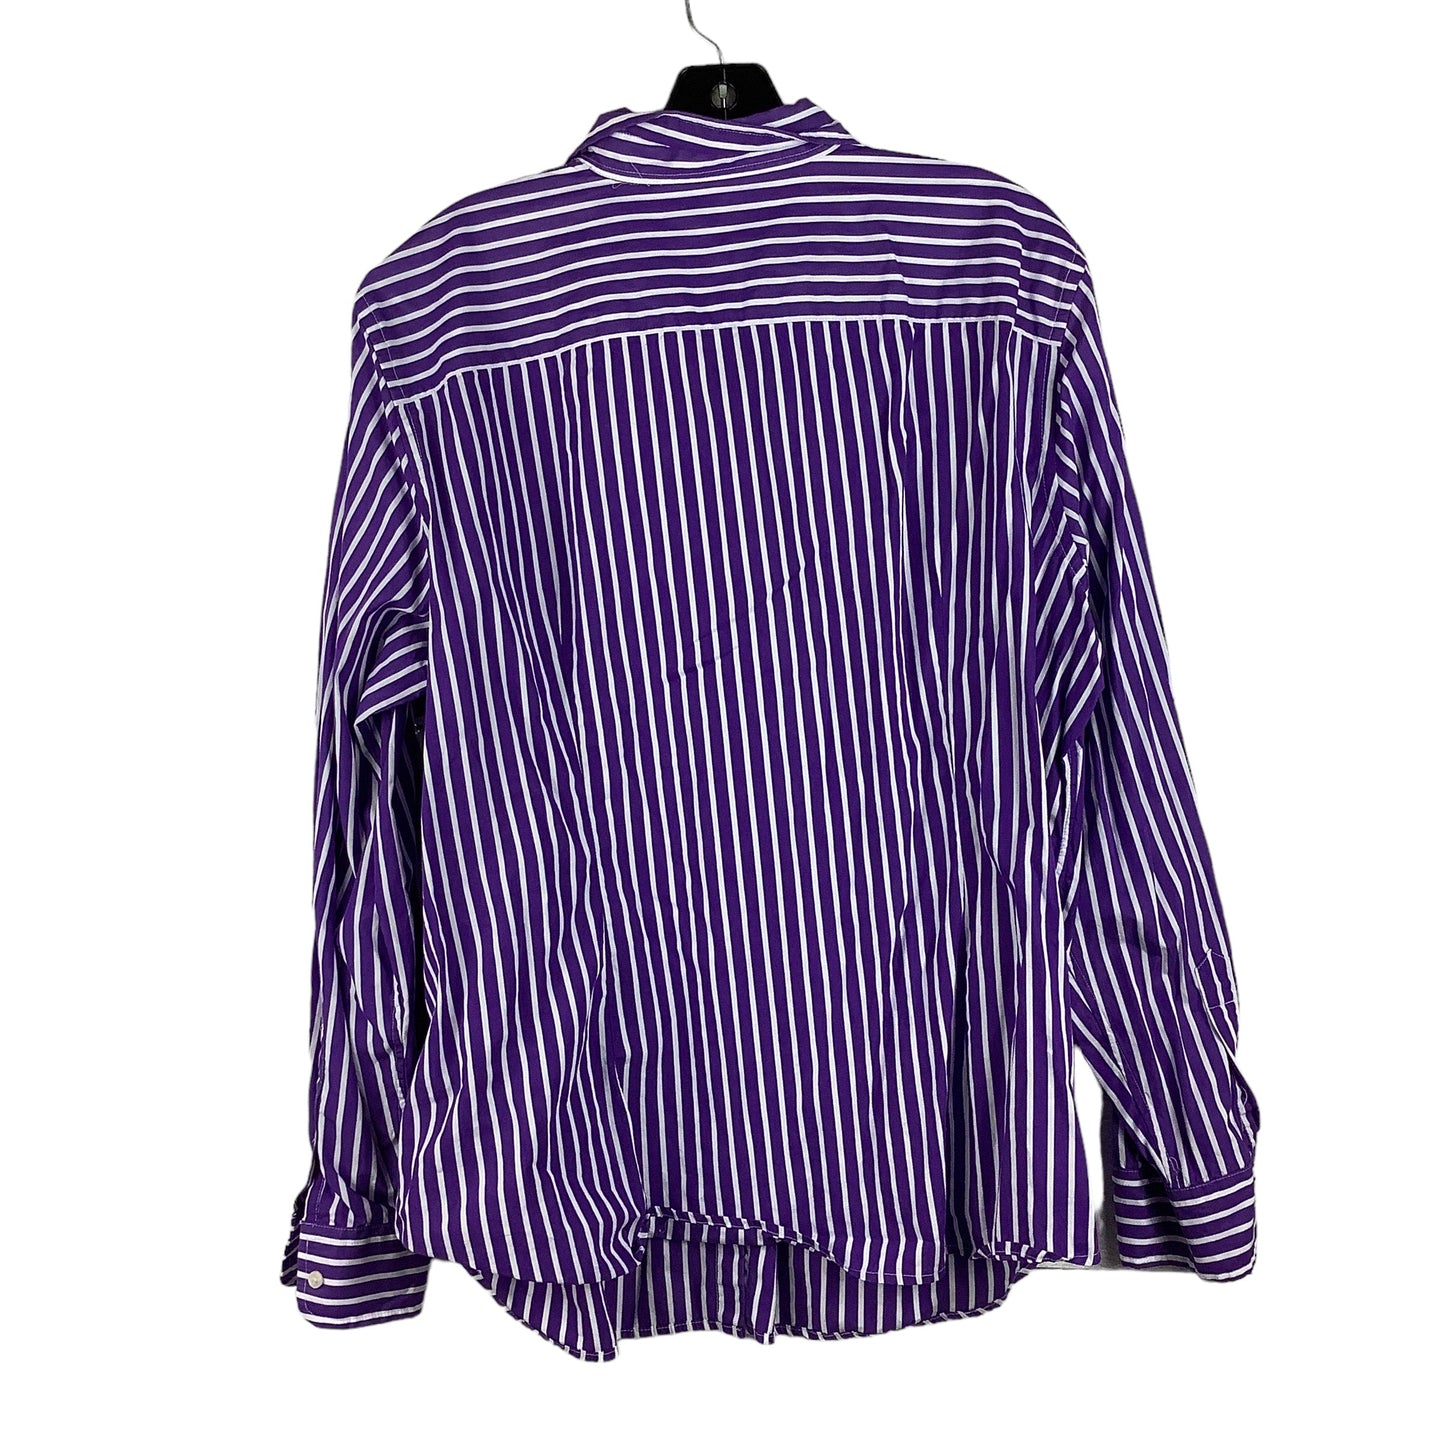 Purple Top Long Sleeve Lauren By Ralph Lauren, Size 1x